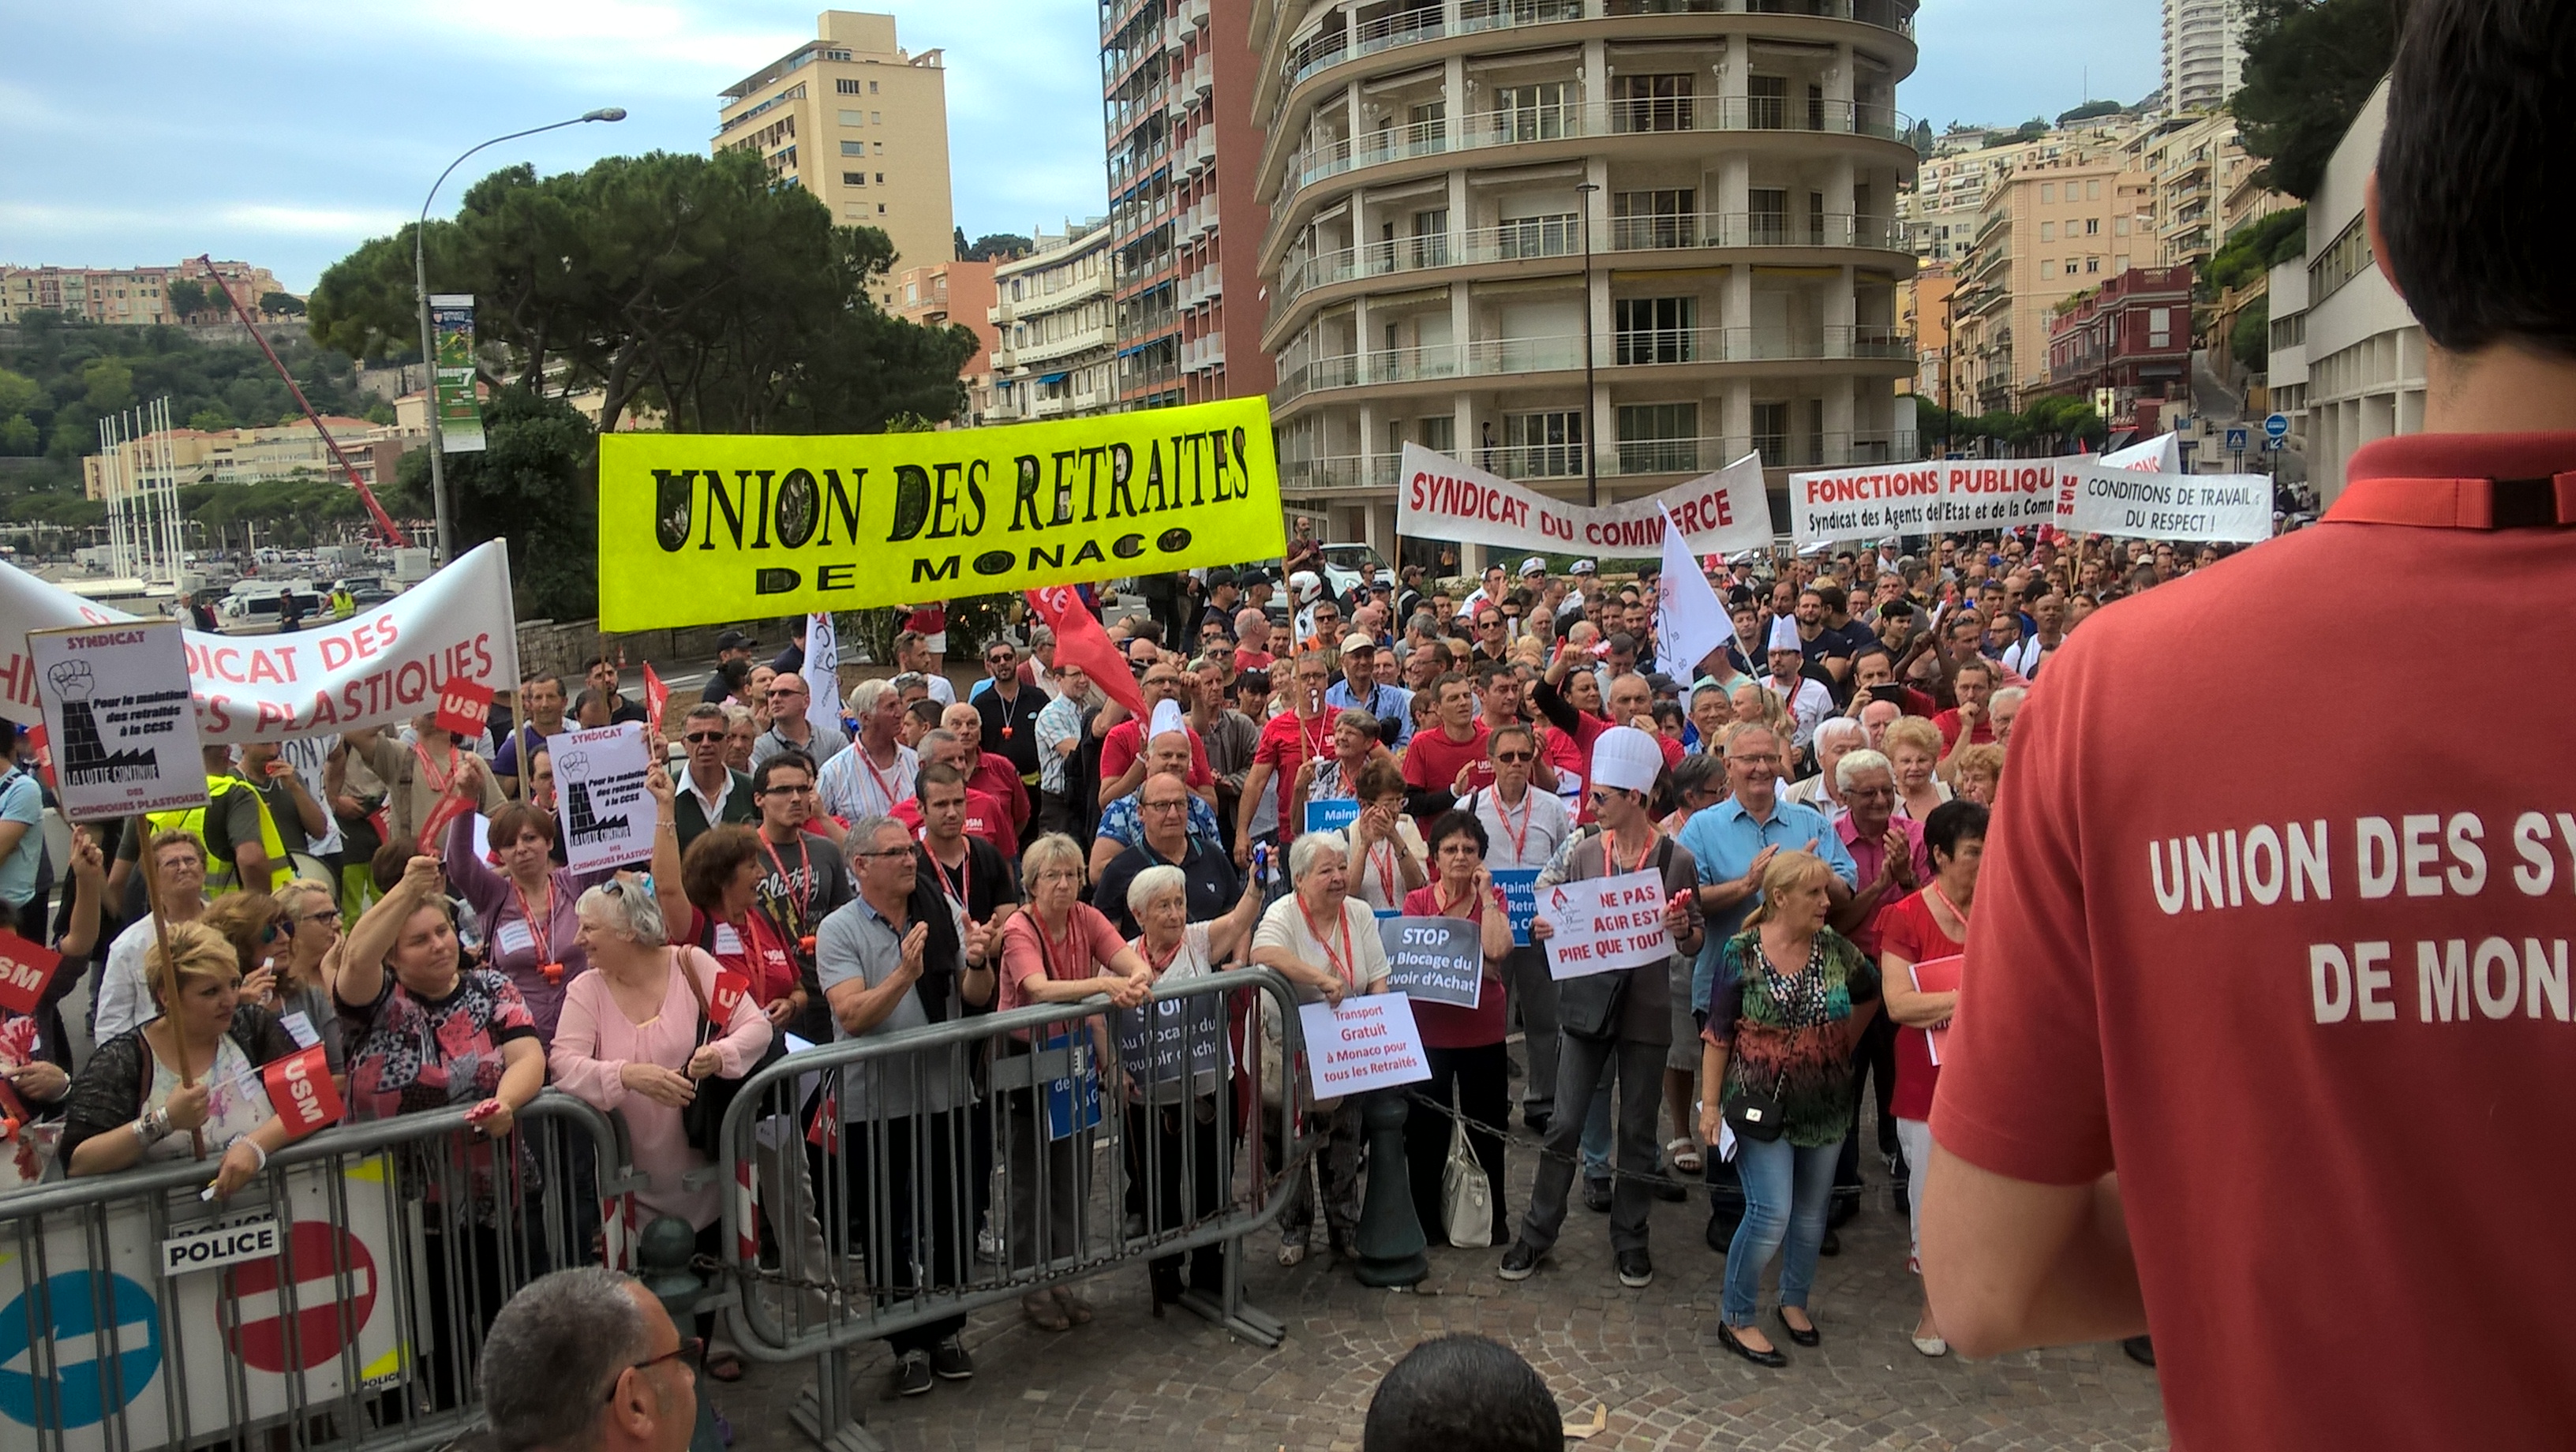 Manifestation pour les retraites à Monaco : les explications de Alex Falce